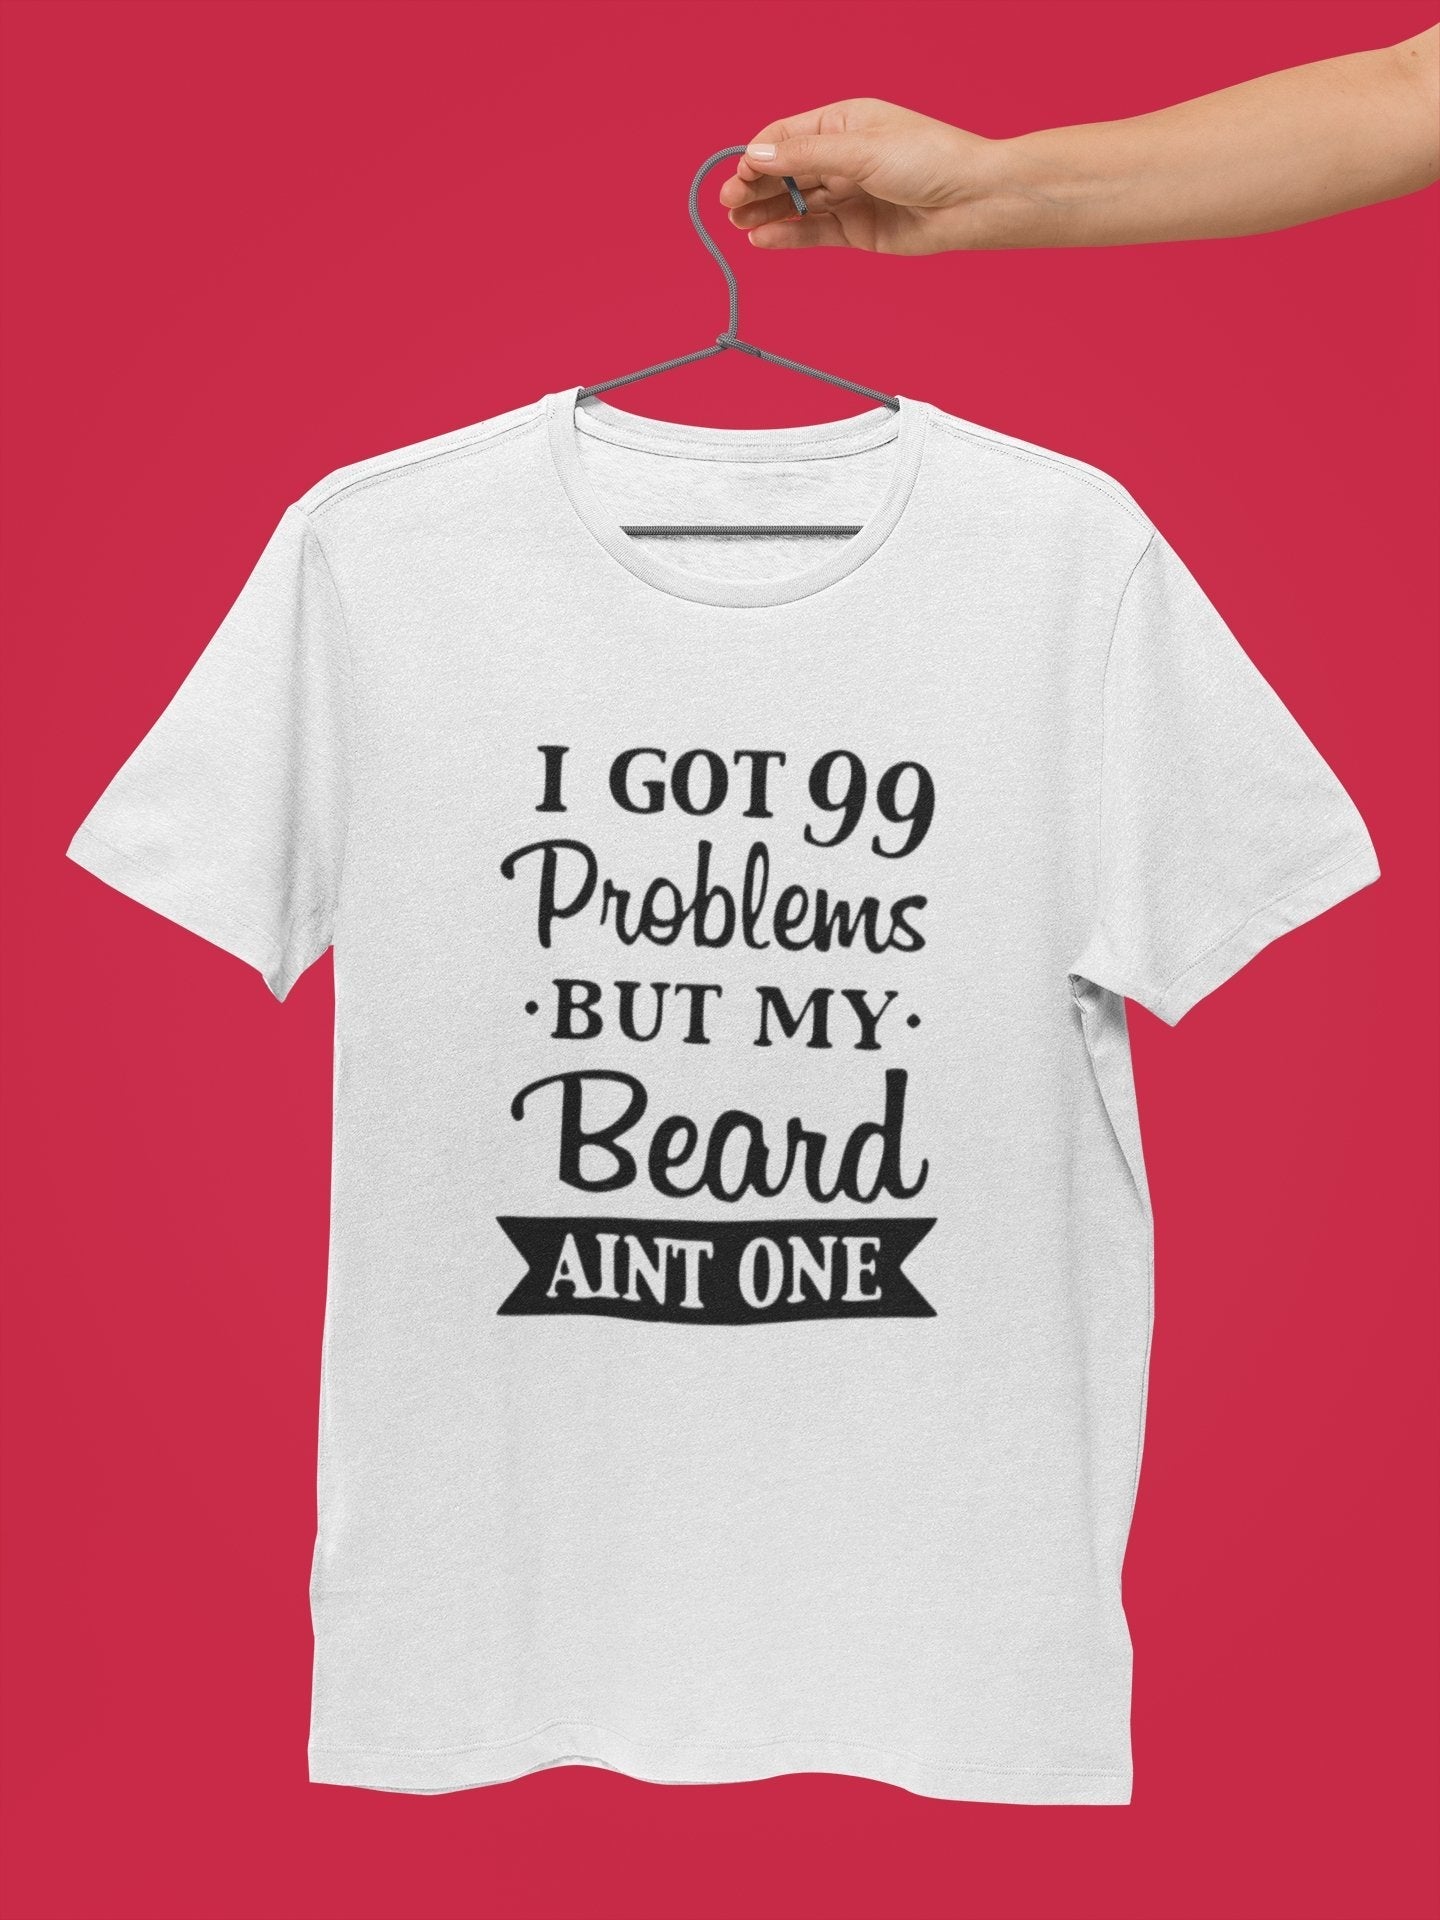 thelegalgang,I Got 99 Problems Beard isn't one T Shirt for Bearded Men,MEN.